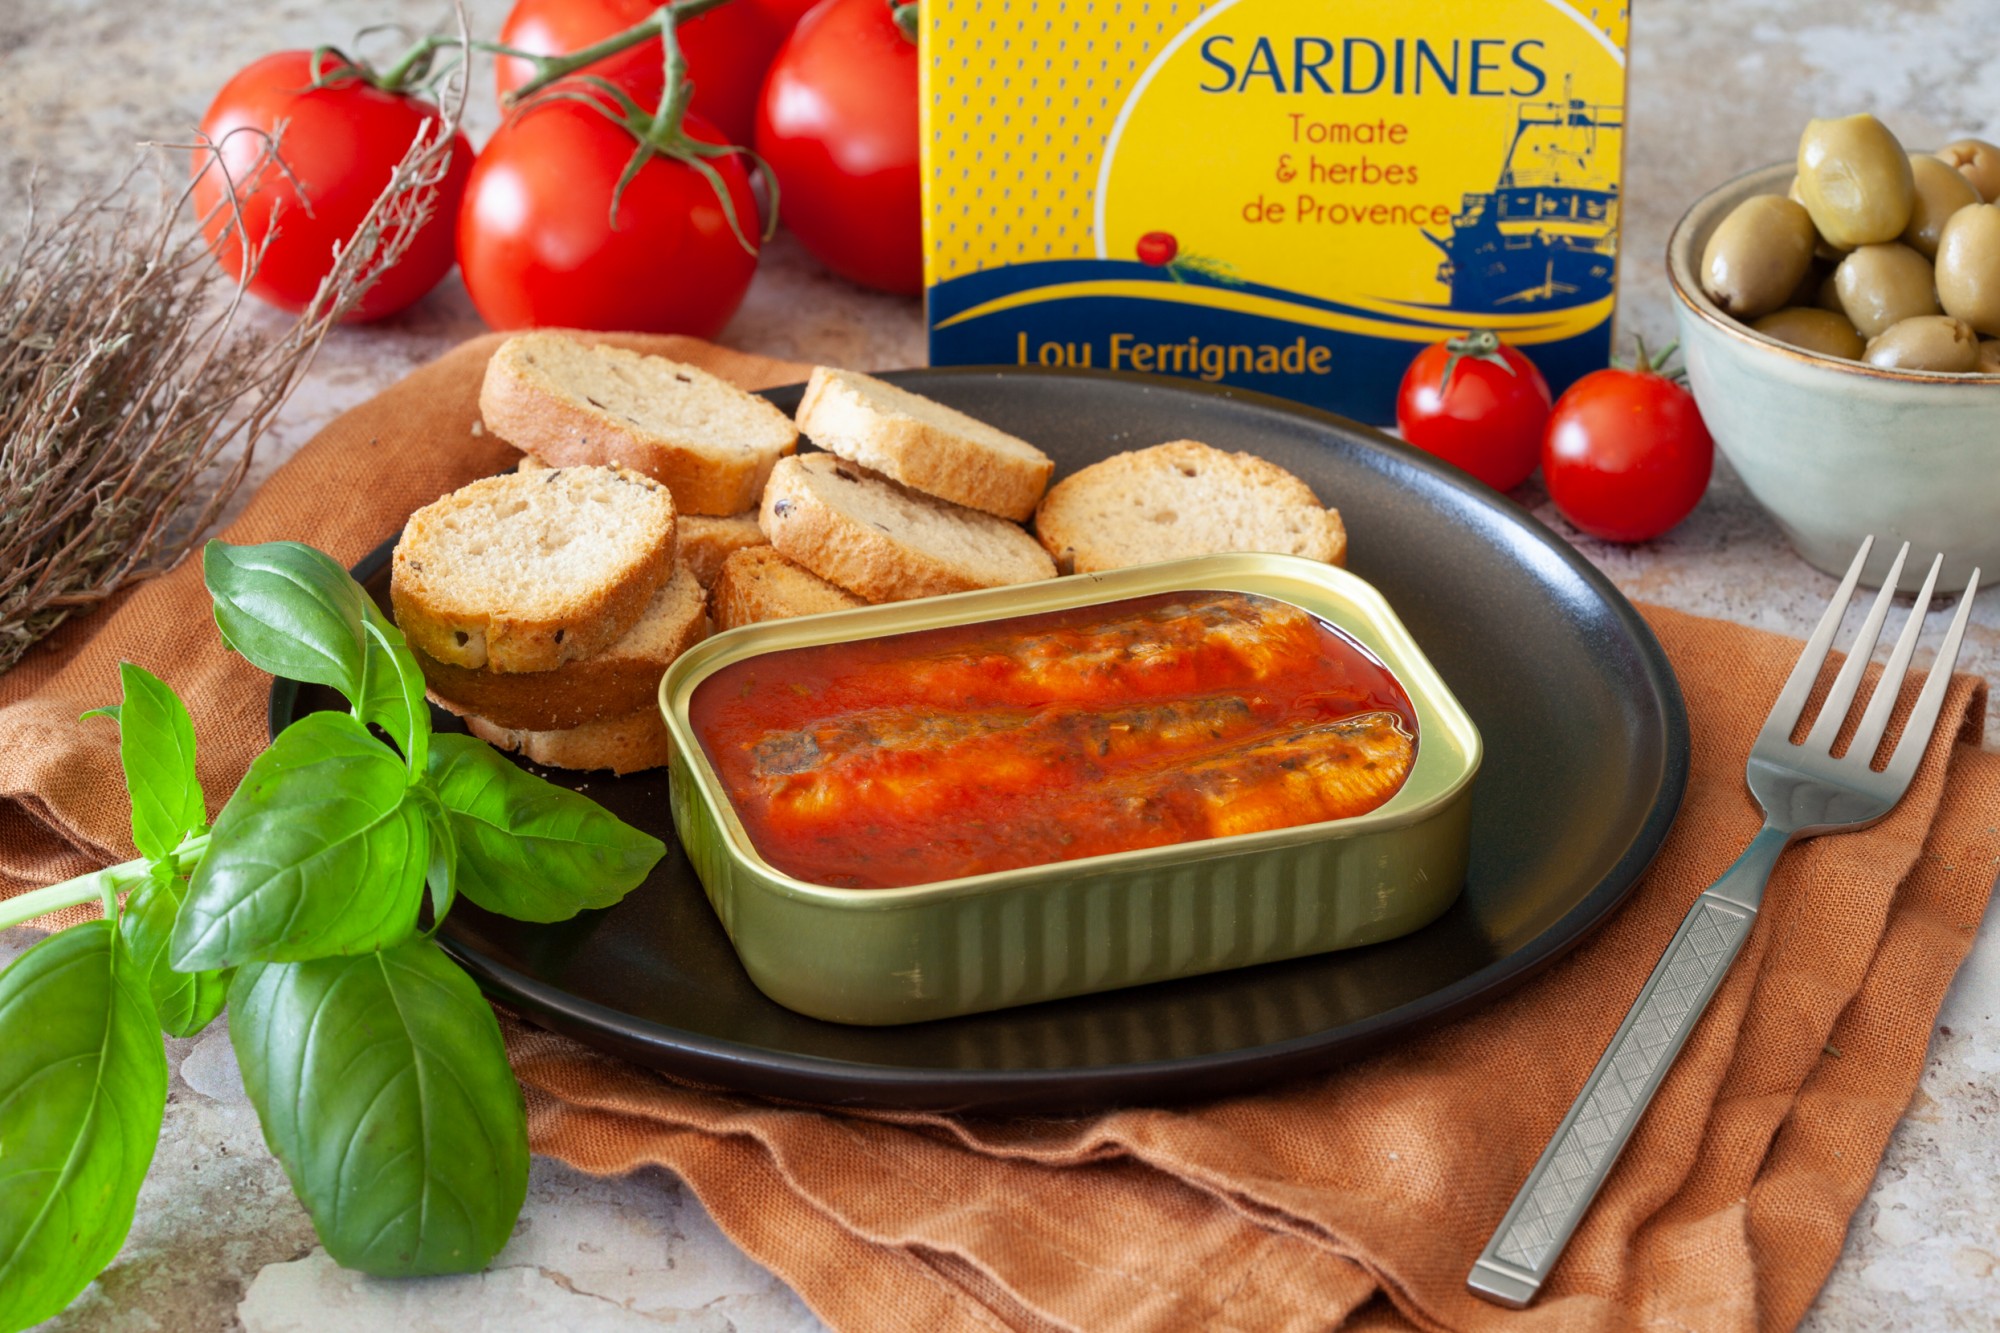 Sardines à la tomate et herbes de provence - Lou Ferrignade - 115g